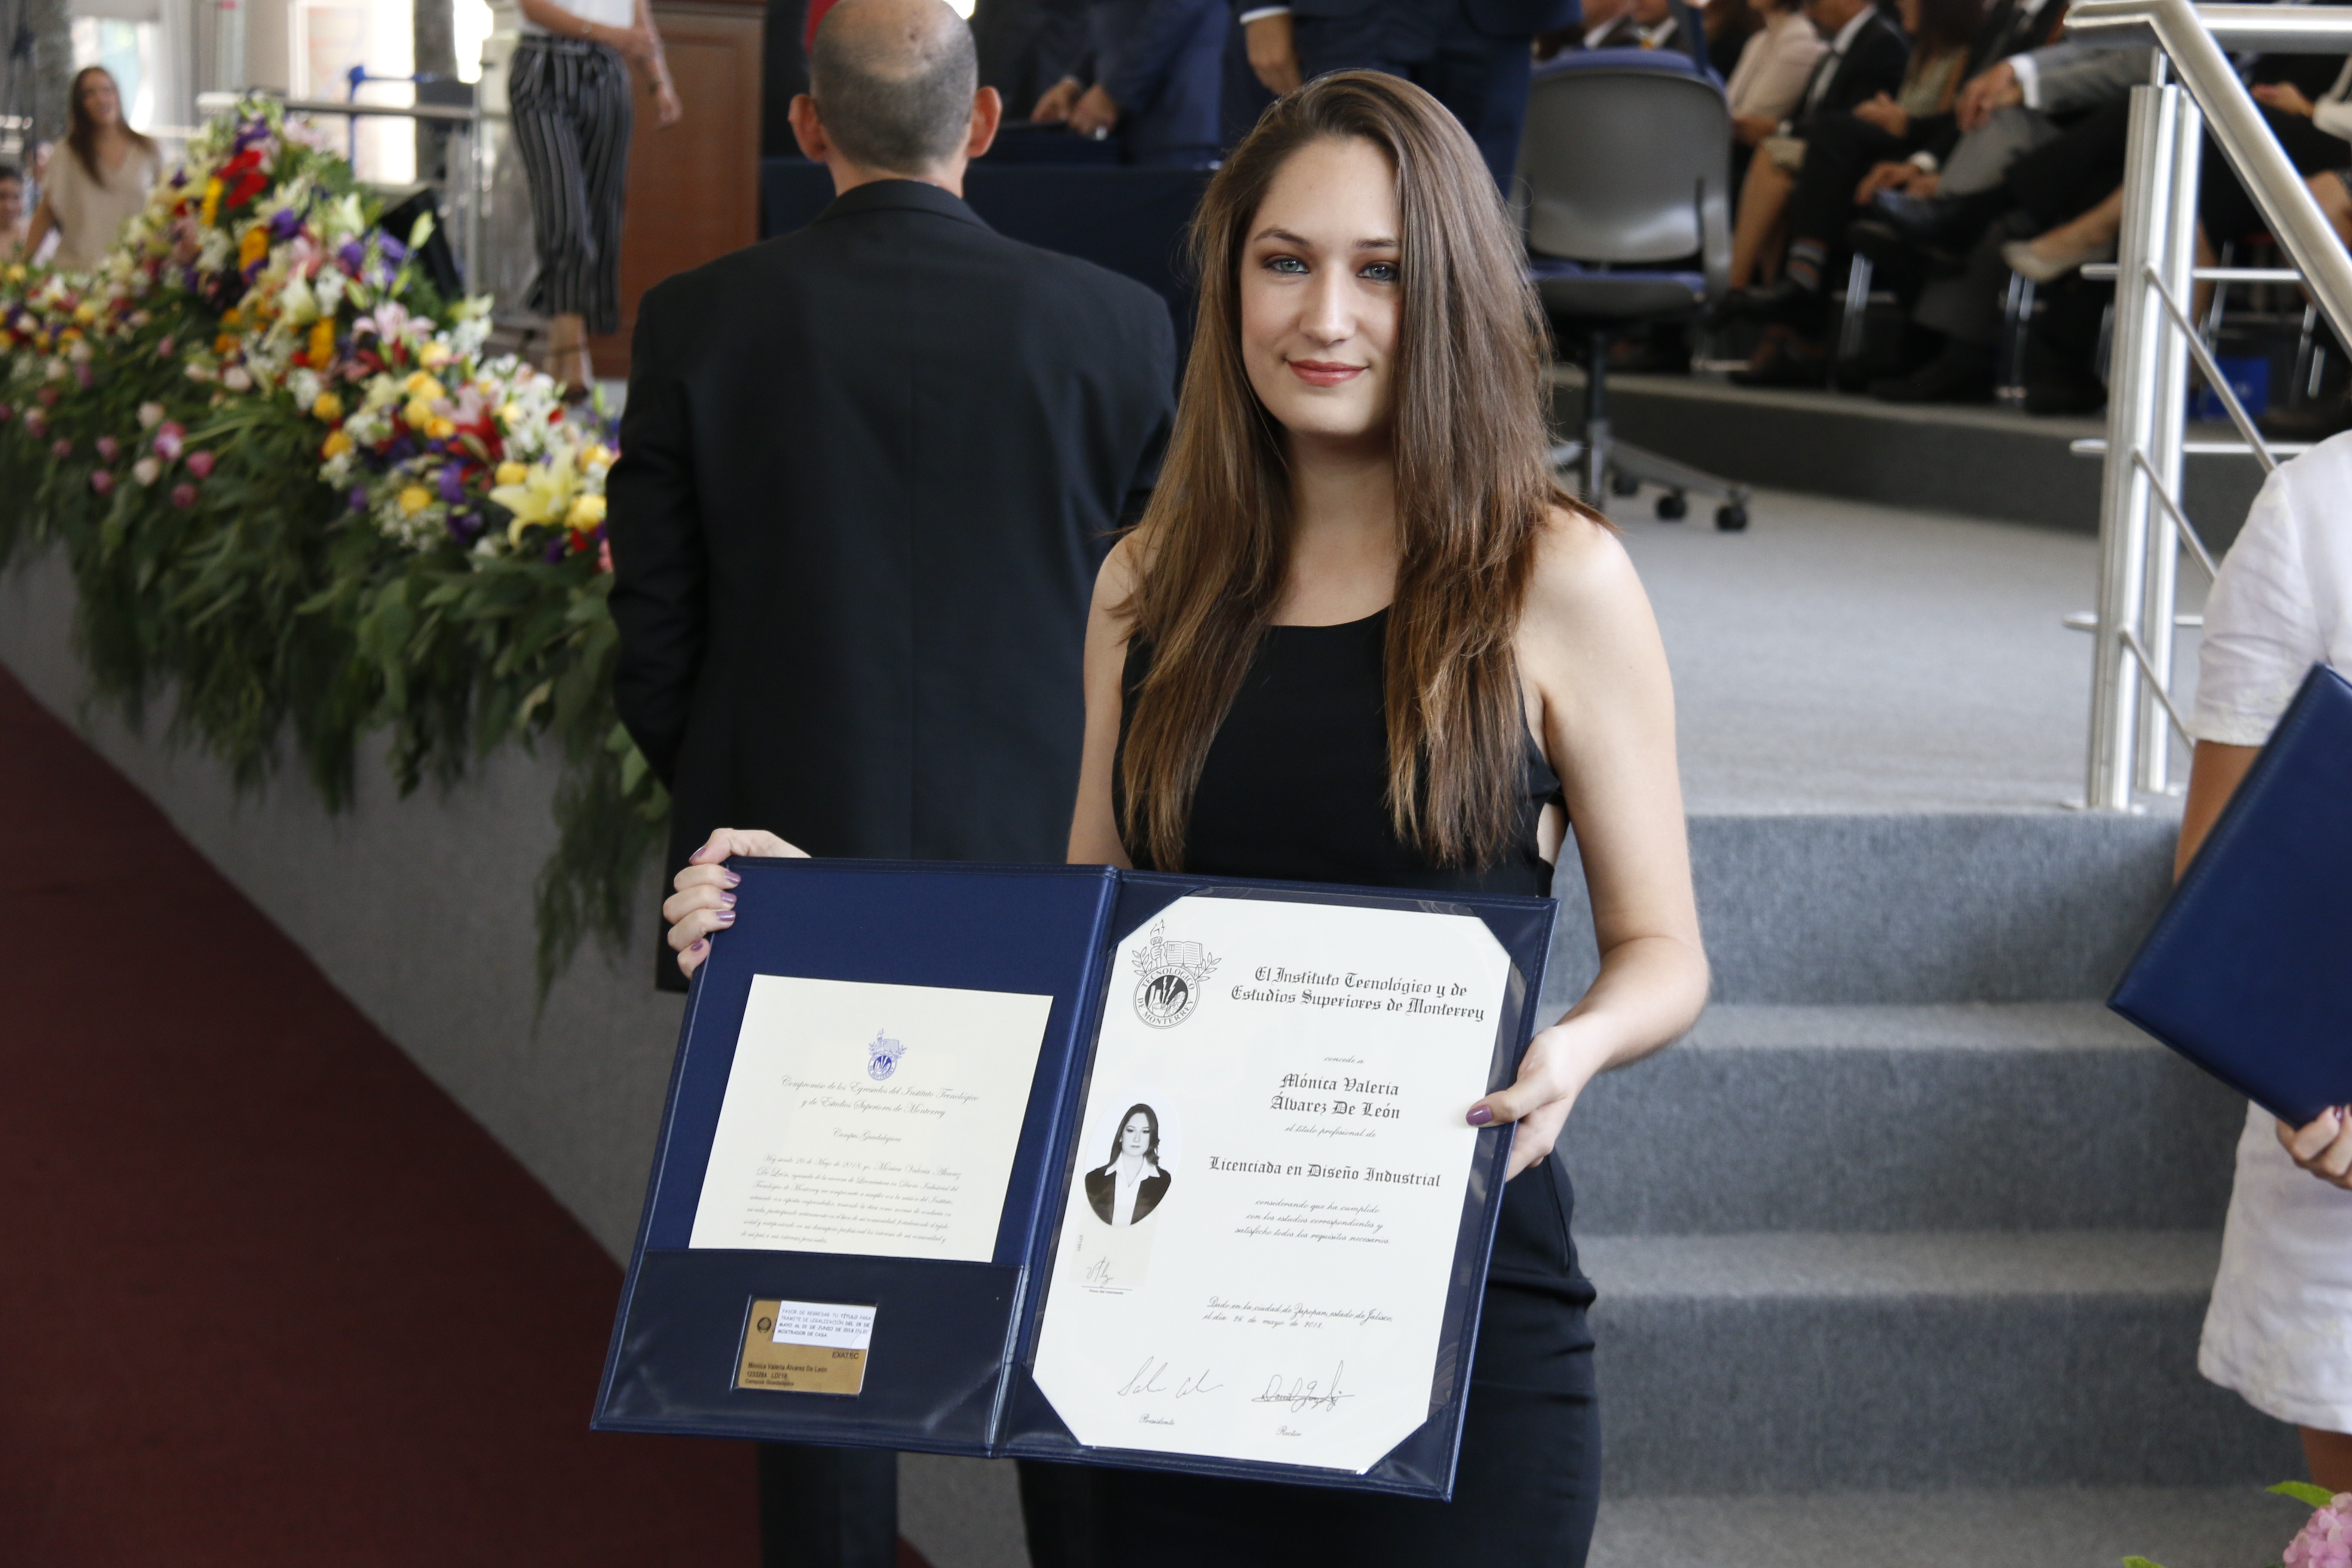 Graduación Profesional y Posgrados mayo 2018